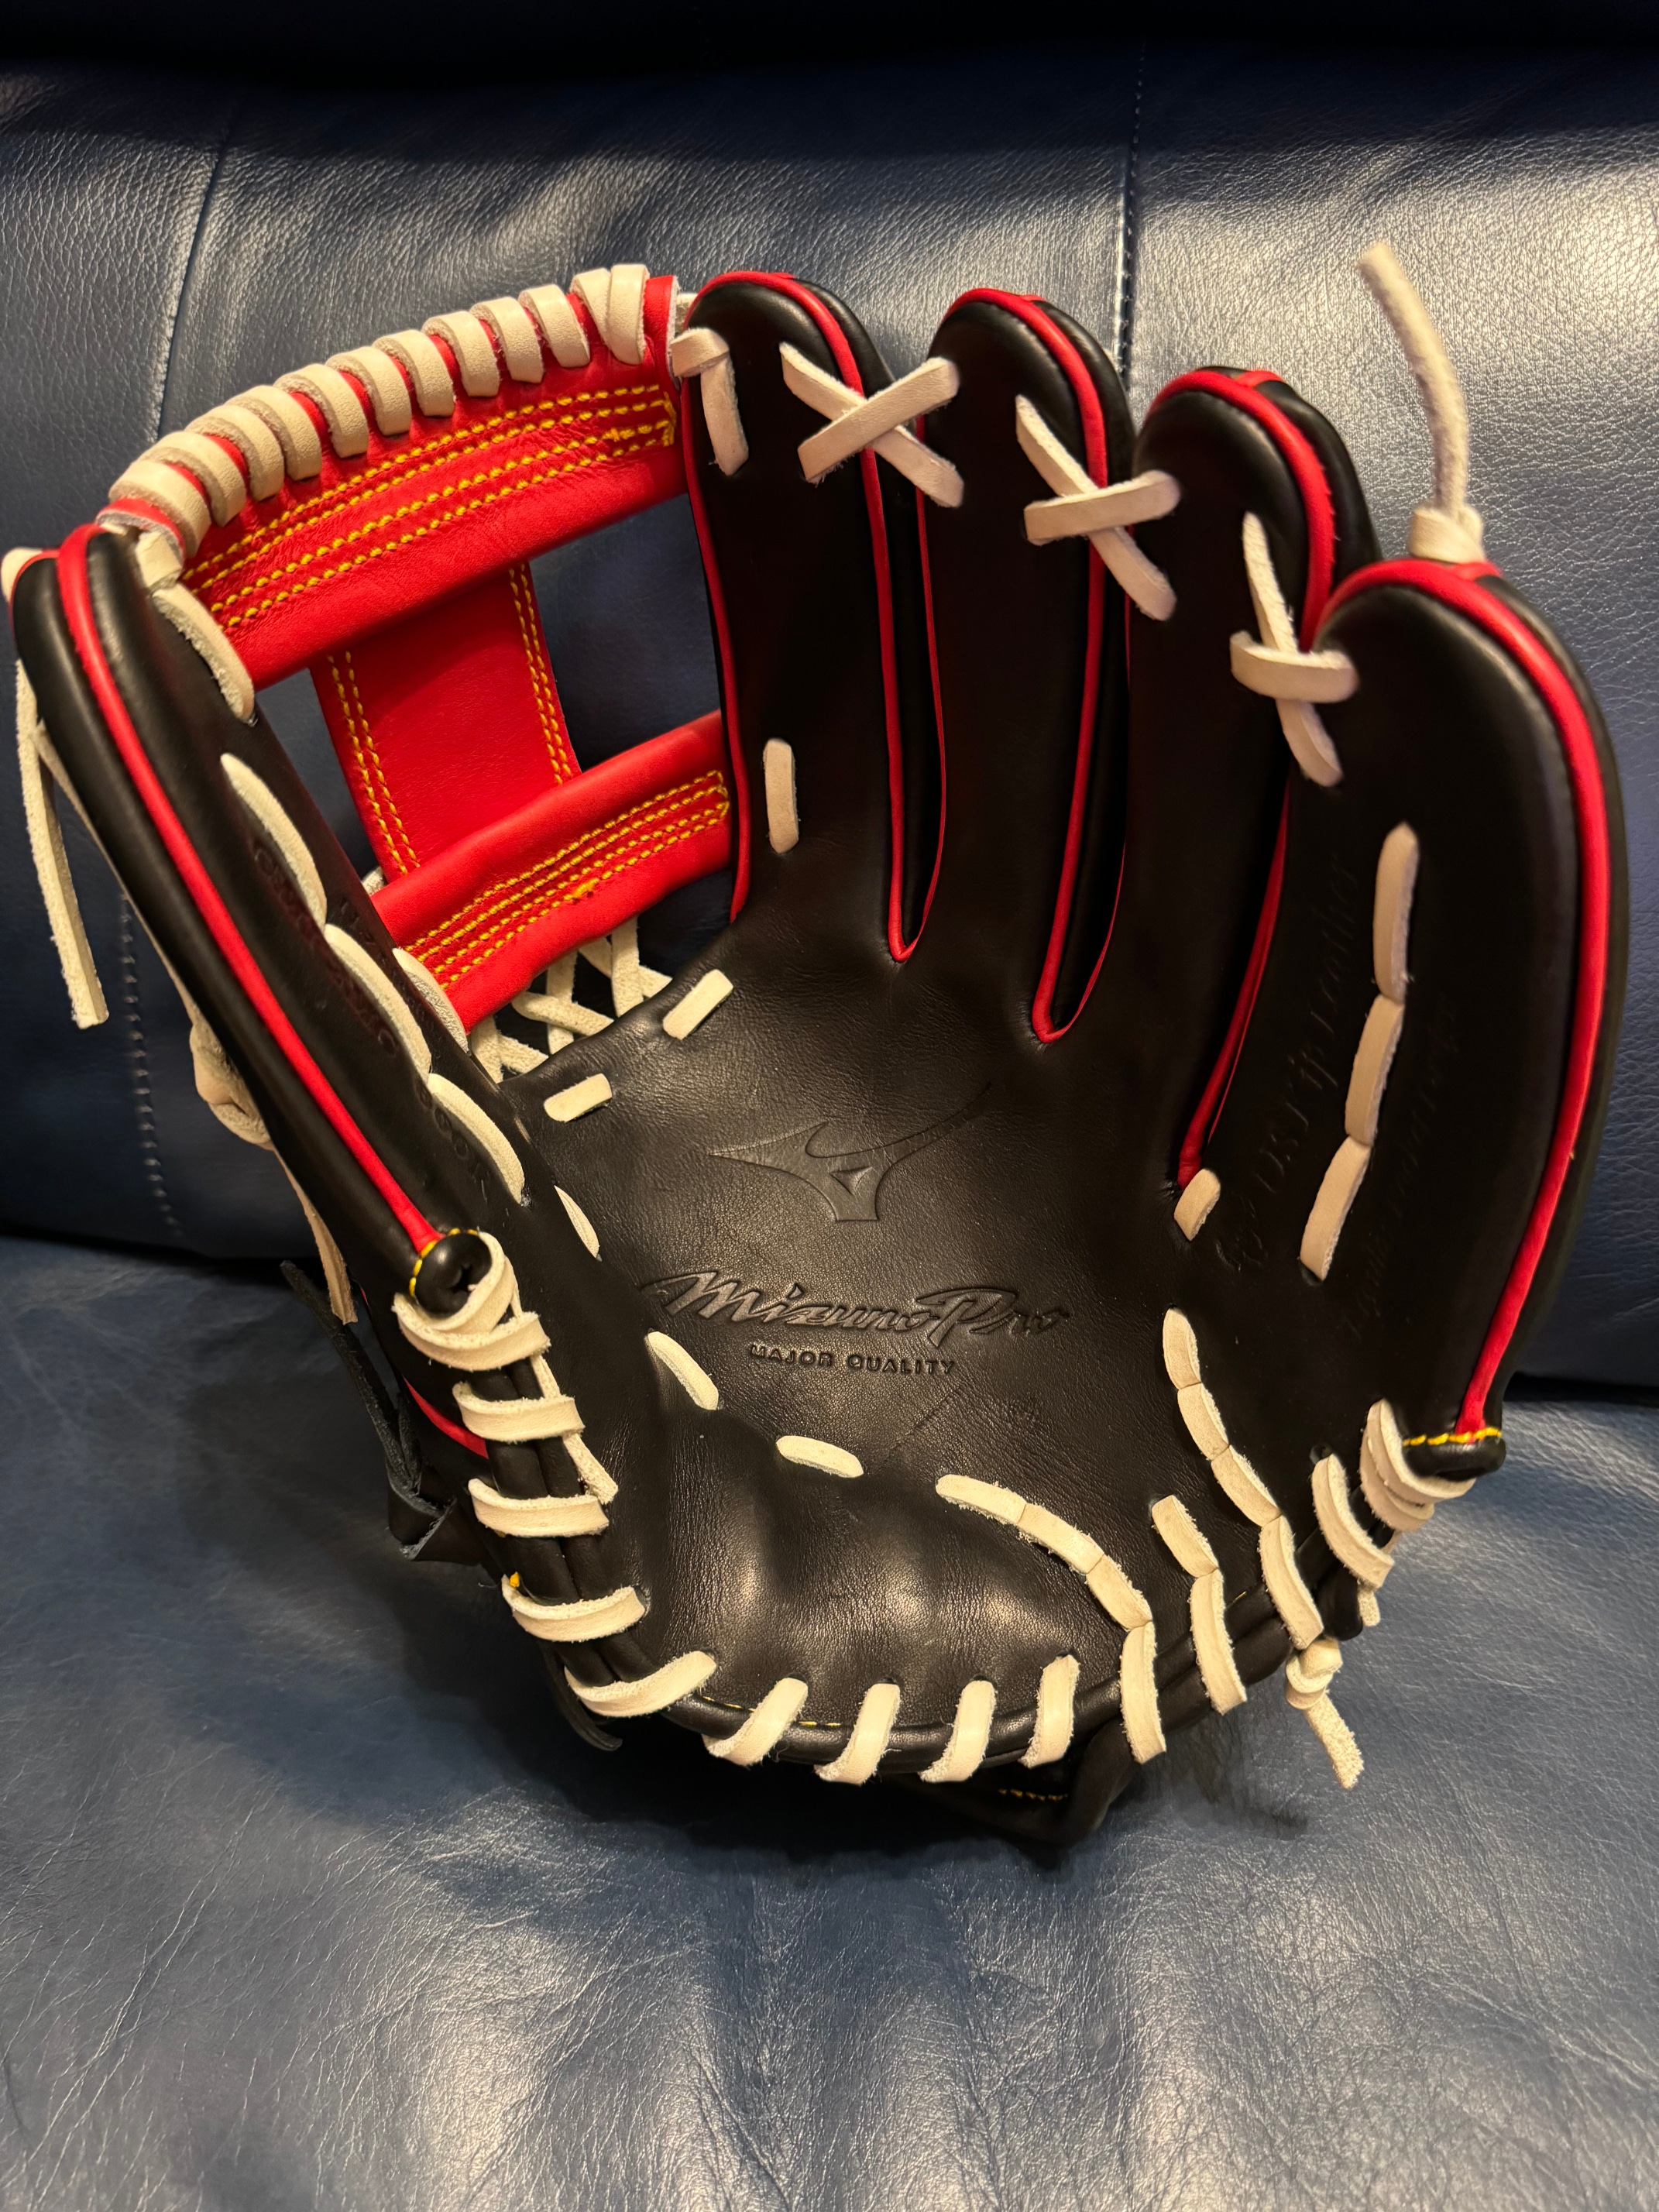 NWOT RHT Mizuno Pro Michael Chavis 11.75" Baseball Glove (GMP2MC 600R)